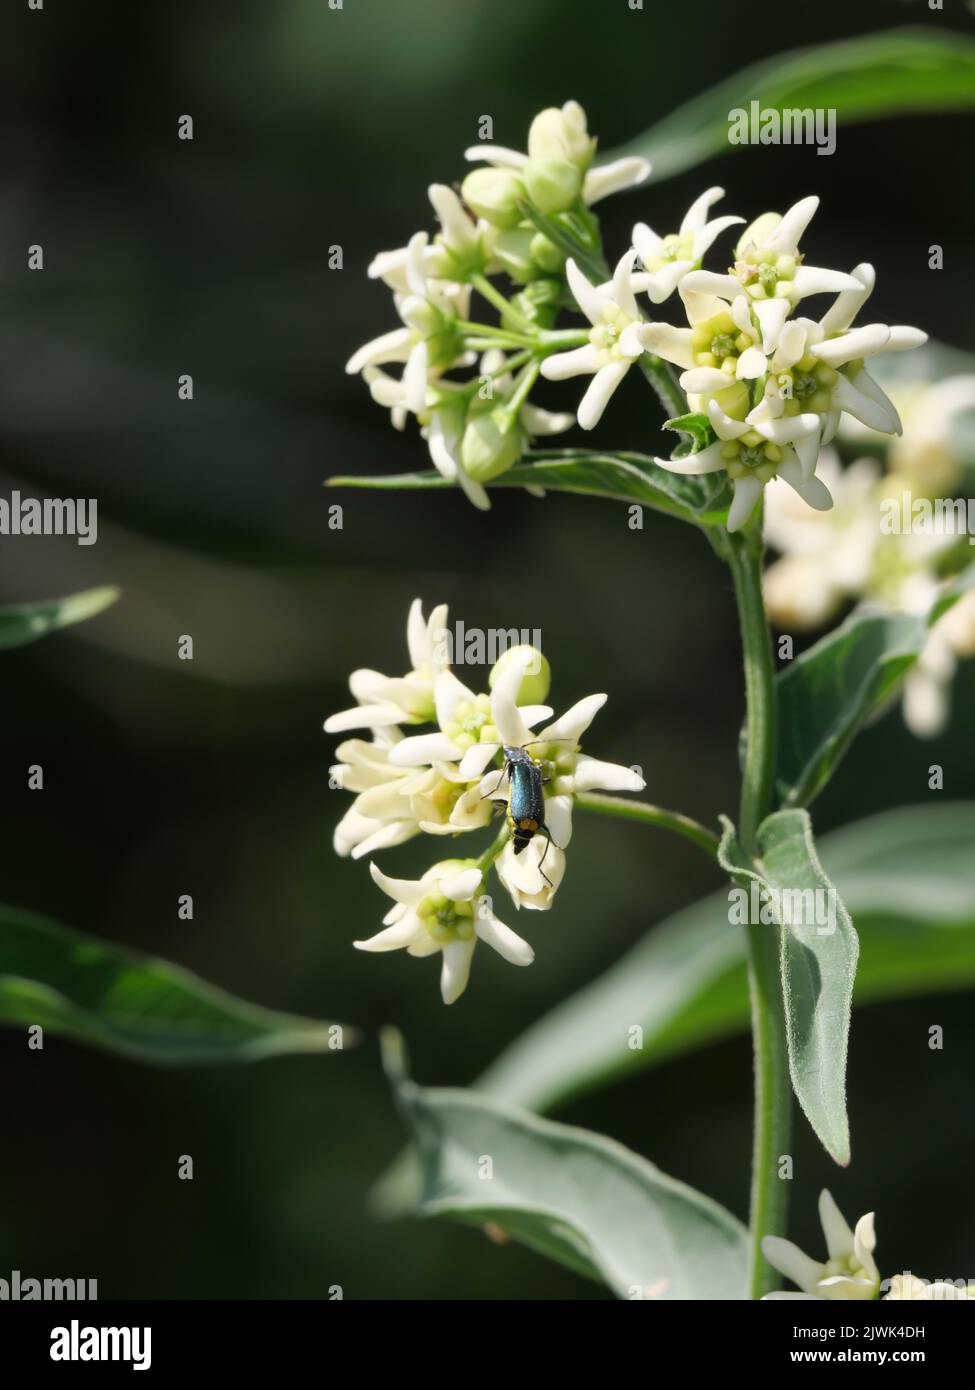 Close-up of white milkweed flowers Stock Photo